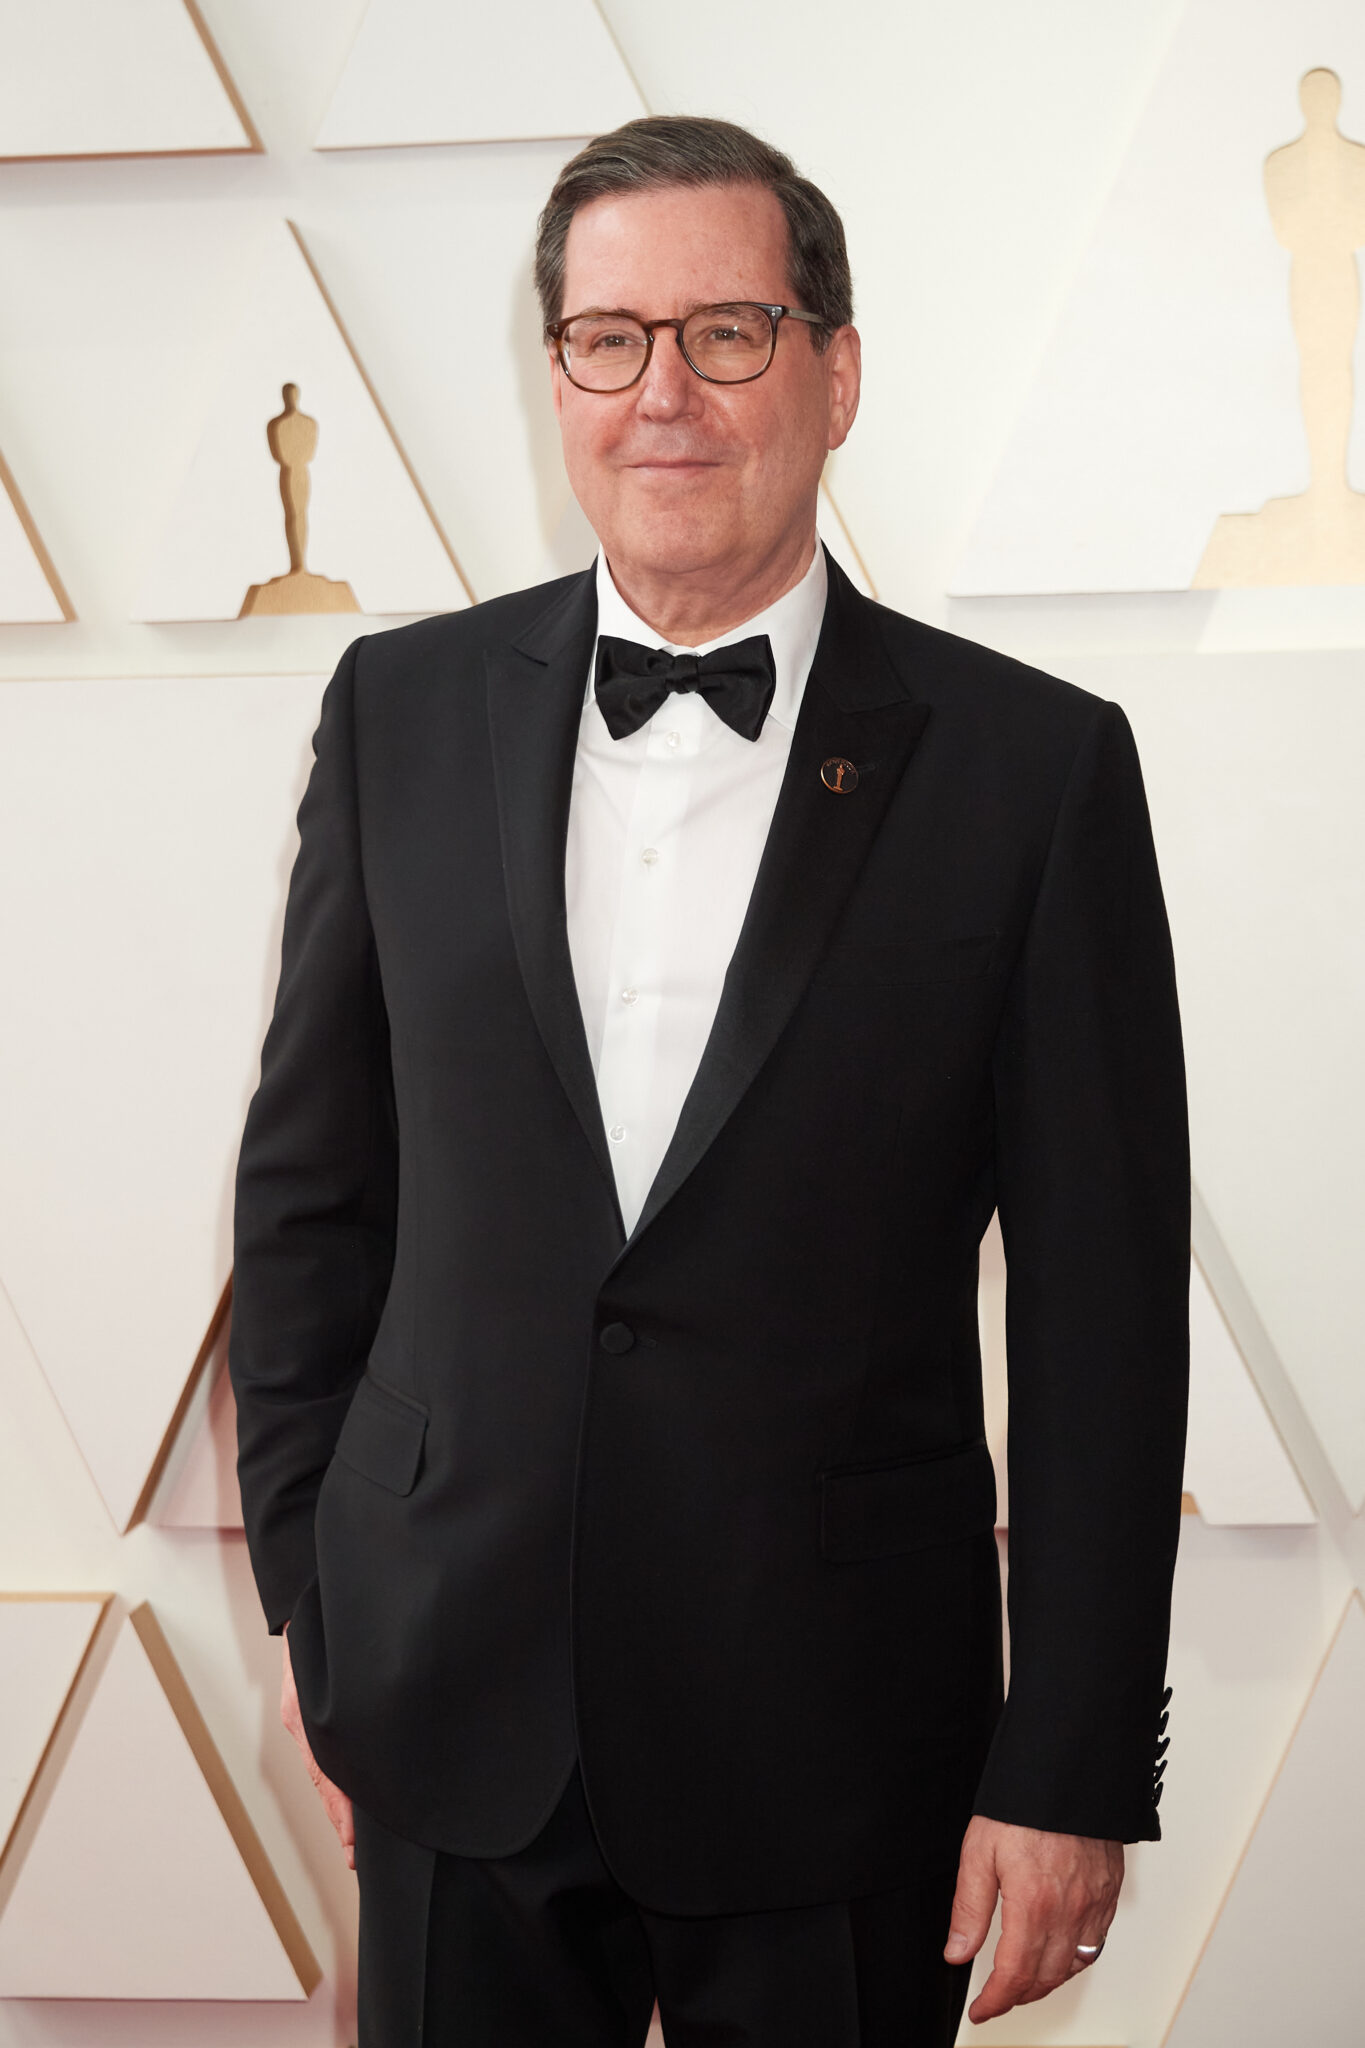 94th Oscars, Academy Awards 4Chion Lifestyle Academy President David Rubin